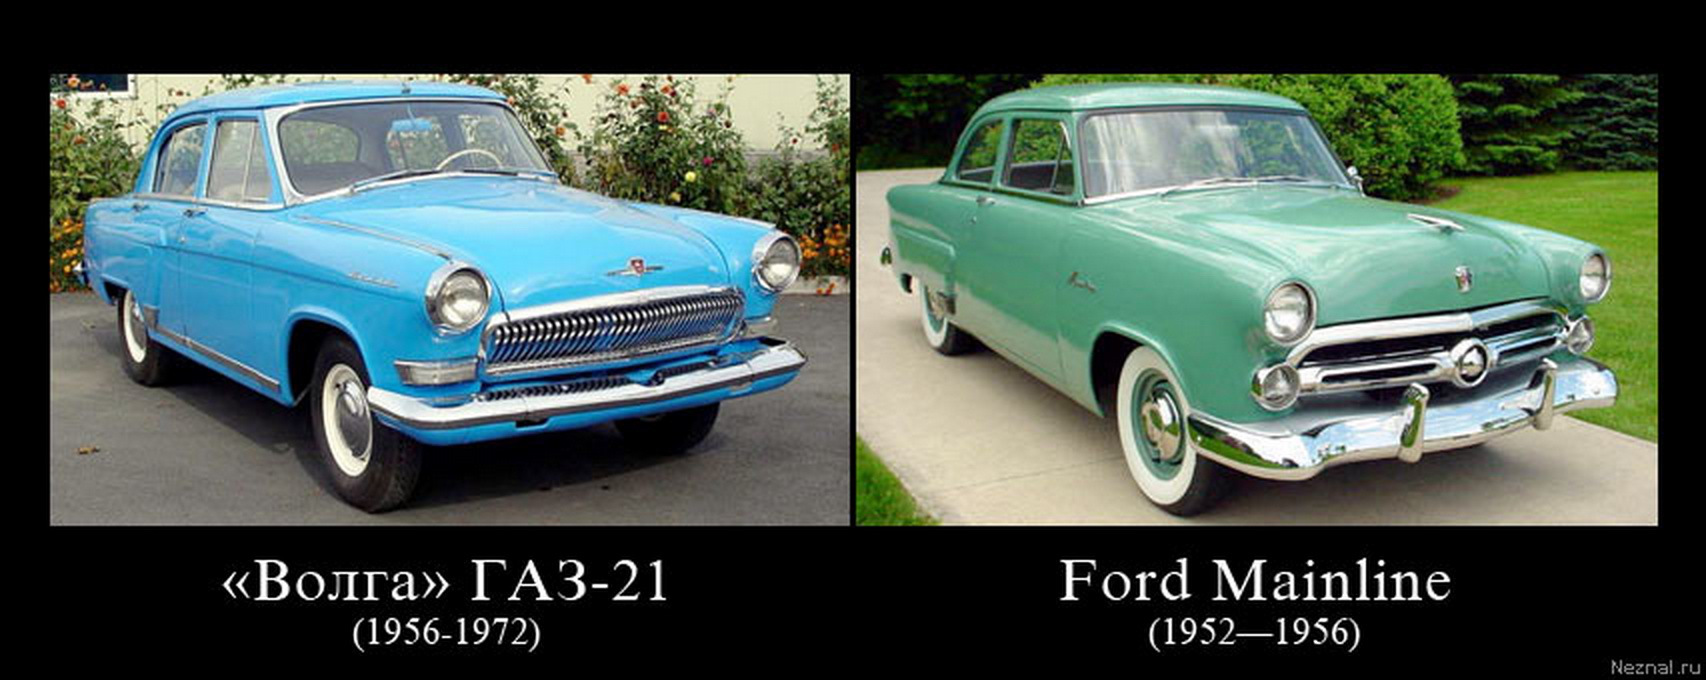 Слизанные машины. Ford Mainline и ГАЗ 21. Волга ГАЗ 21 И Форд. Ford Mainline 1954 и ГАЗ 21. ГАЗ 21 Форд мэйнлайн.